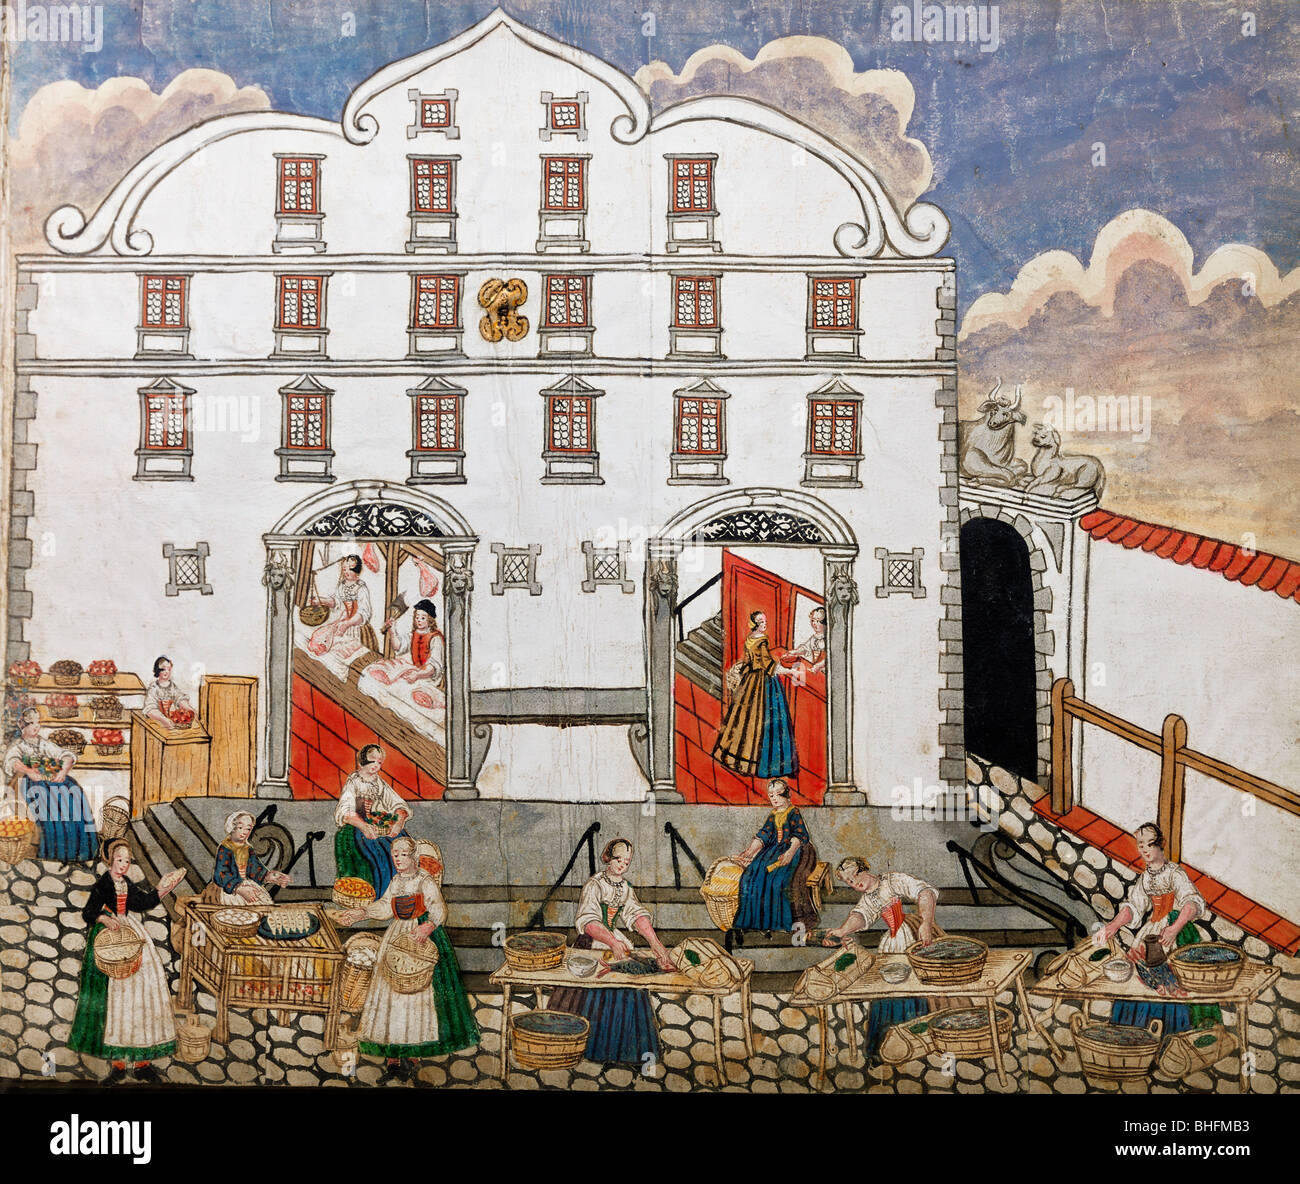 Handel, Märkte, Marktszene mit Maidienern beim Einkaufen, Illustration aus Kinderbuch, Aquarell auf Papier, Süddeutschland, 1735, Stockfoto